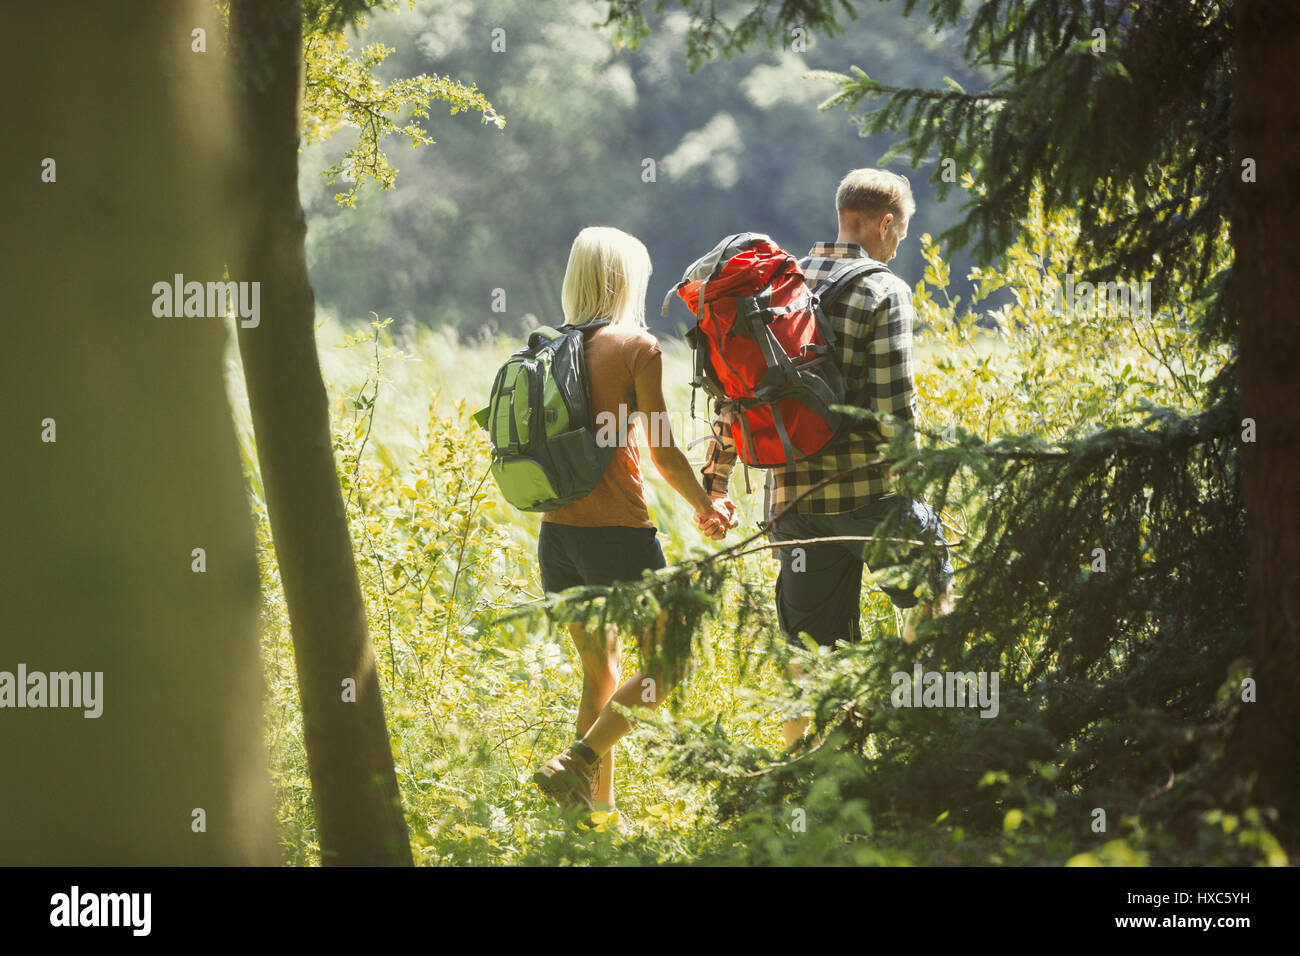 Coppia con zaini holding hands escursioni nei boschi di sole Foto Stock